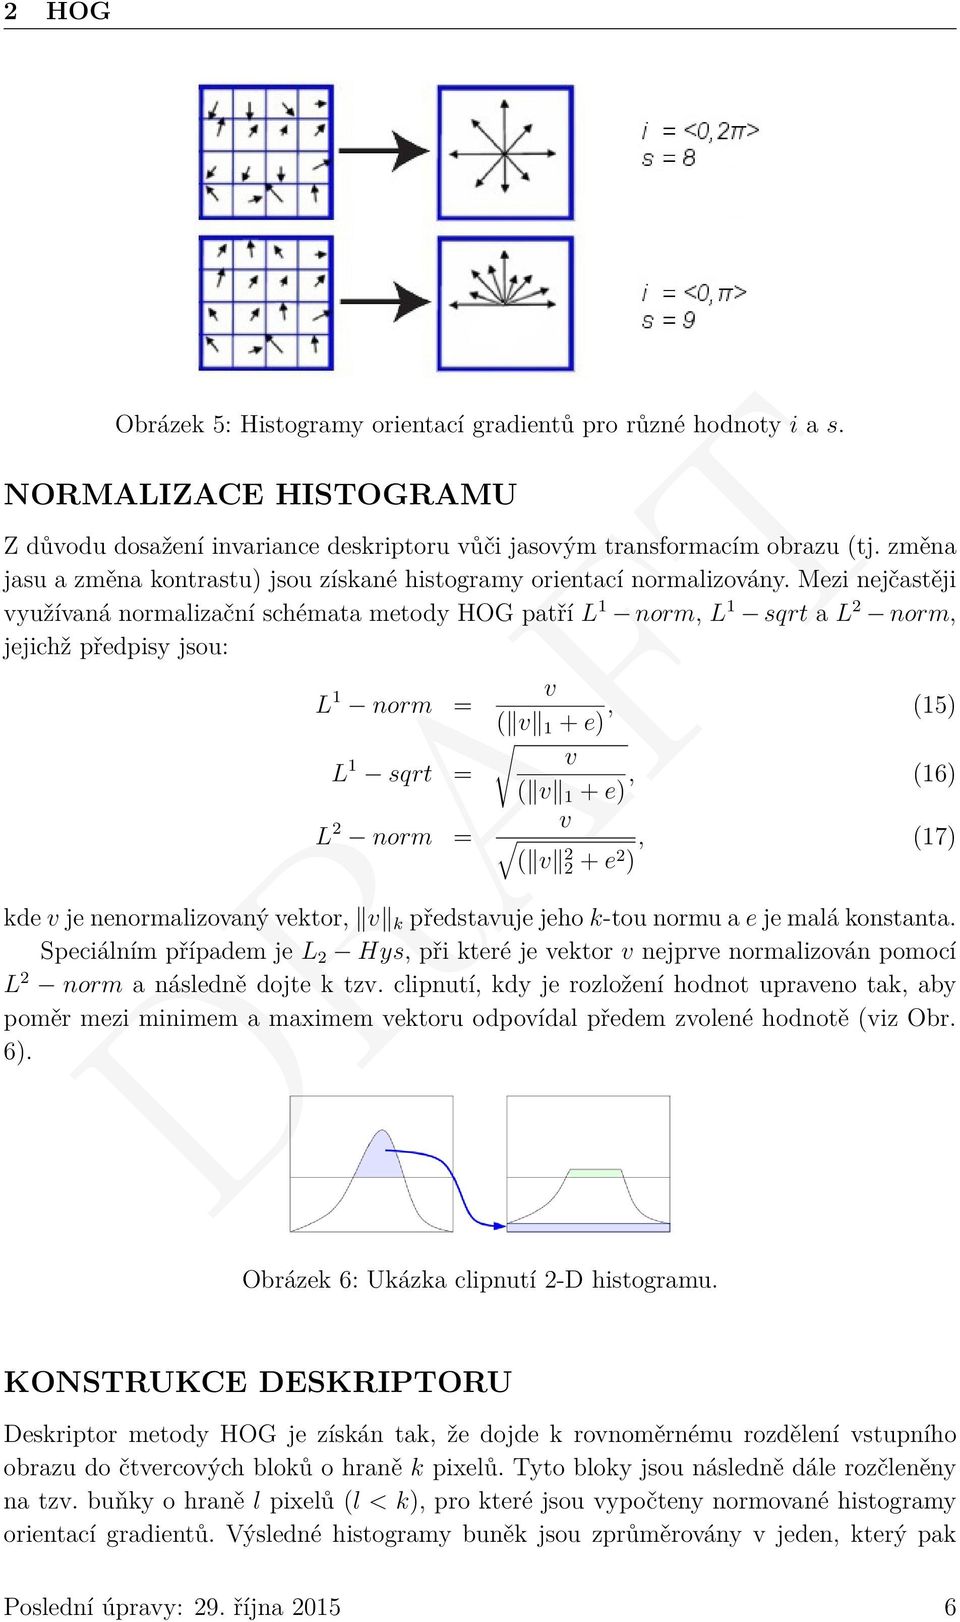 Mezi nejčastěji využívaná normalizační schémata metody HOG patří L 1 norm, L 1 sqrt a L 2 norm, jejichž předpisy jsou: L 1 norm = L 1 sqrt = L 2 norm = v ( v 1 + e), (15) v ( v 1 + e), (16) v ( v 2 2